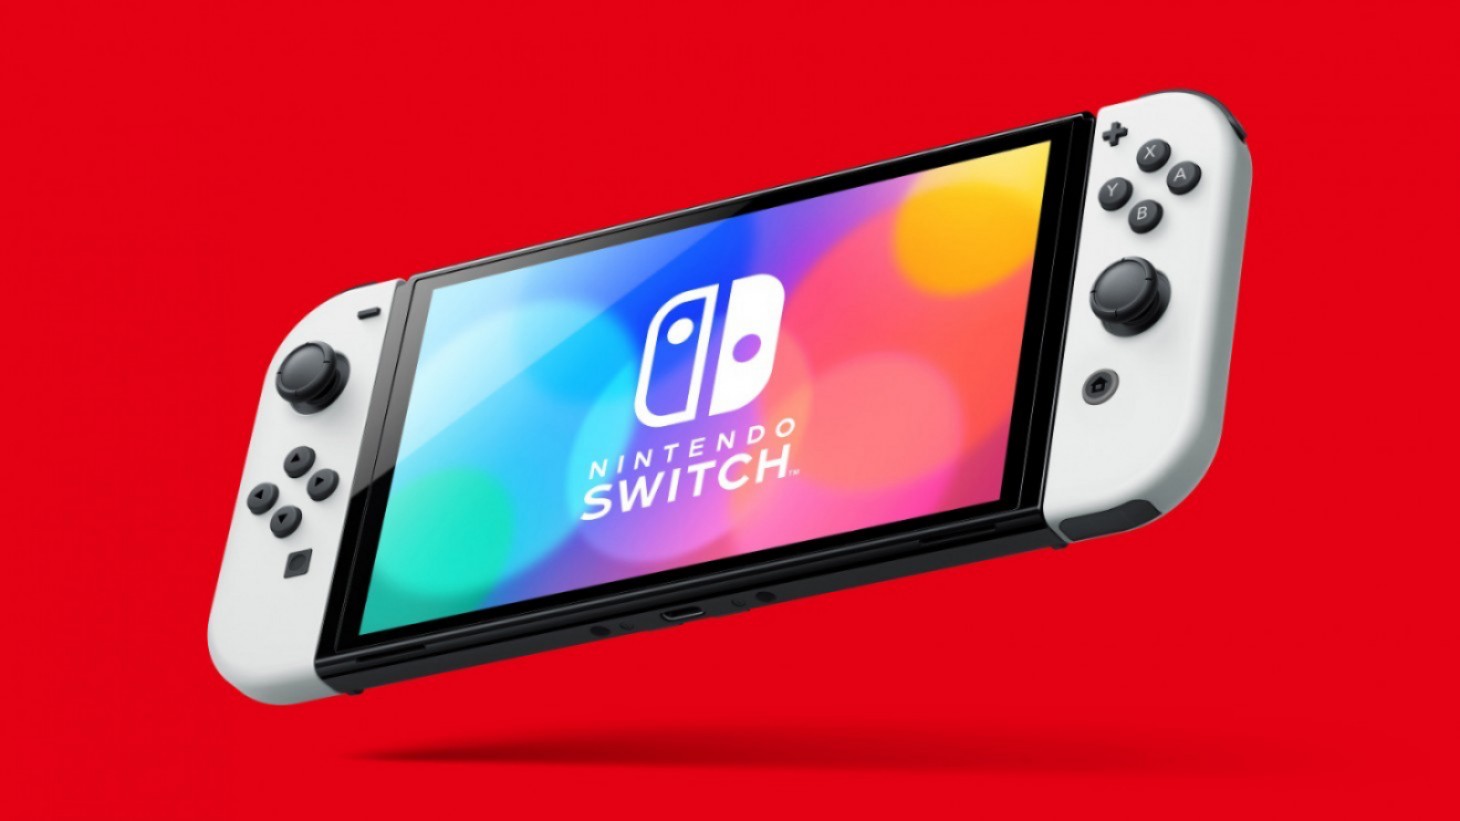 Die Switch 2 kommt angeblich im September auf den Markt, so die Pressemitteilung eines KI-Unternehmens